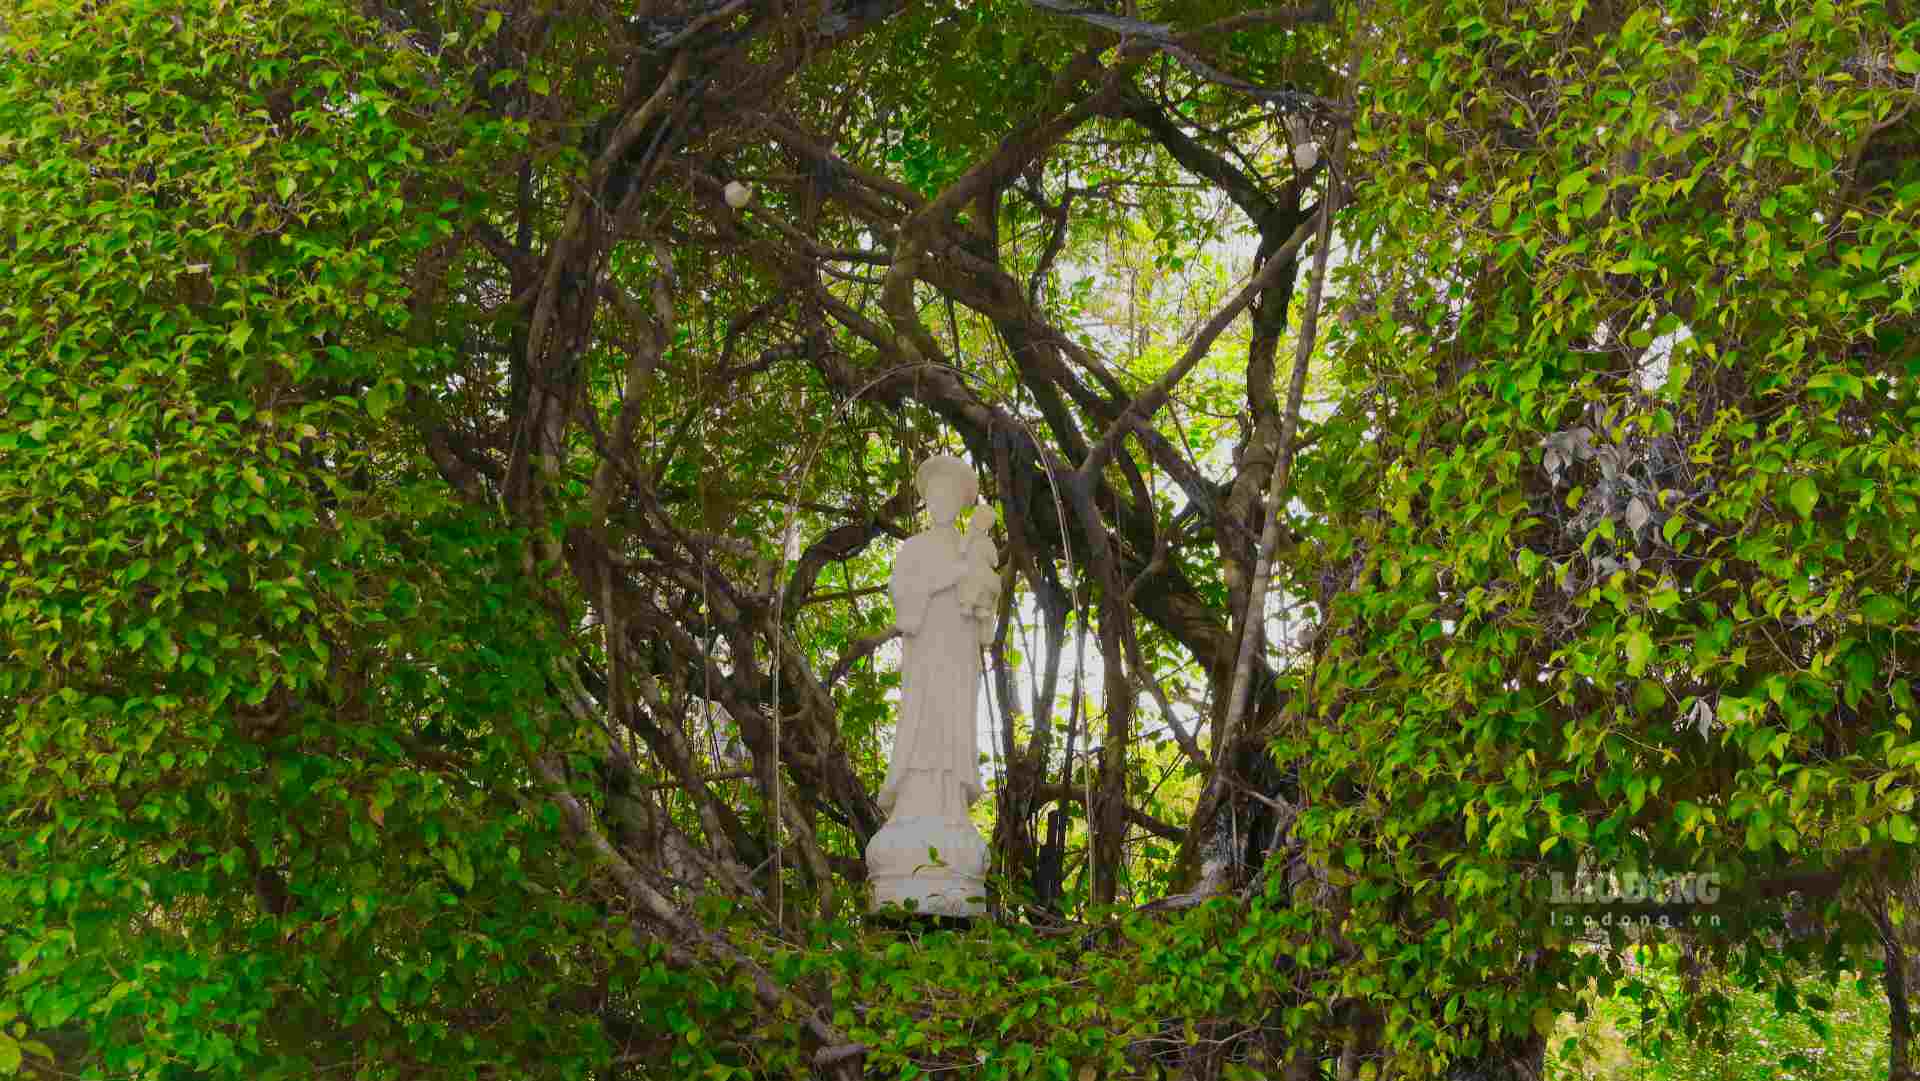 Phía bên trong sân vườn có tượng Đức Mẹ bế Chúa Hài Đồng bao phủ bởi cây cối được uốn tạo hình vòm.